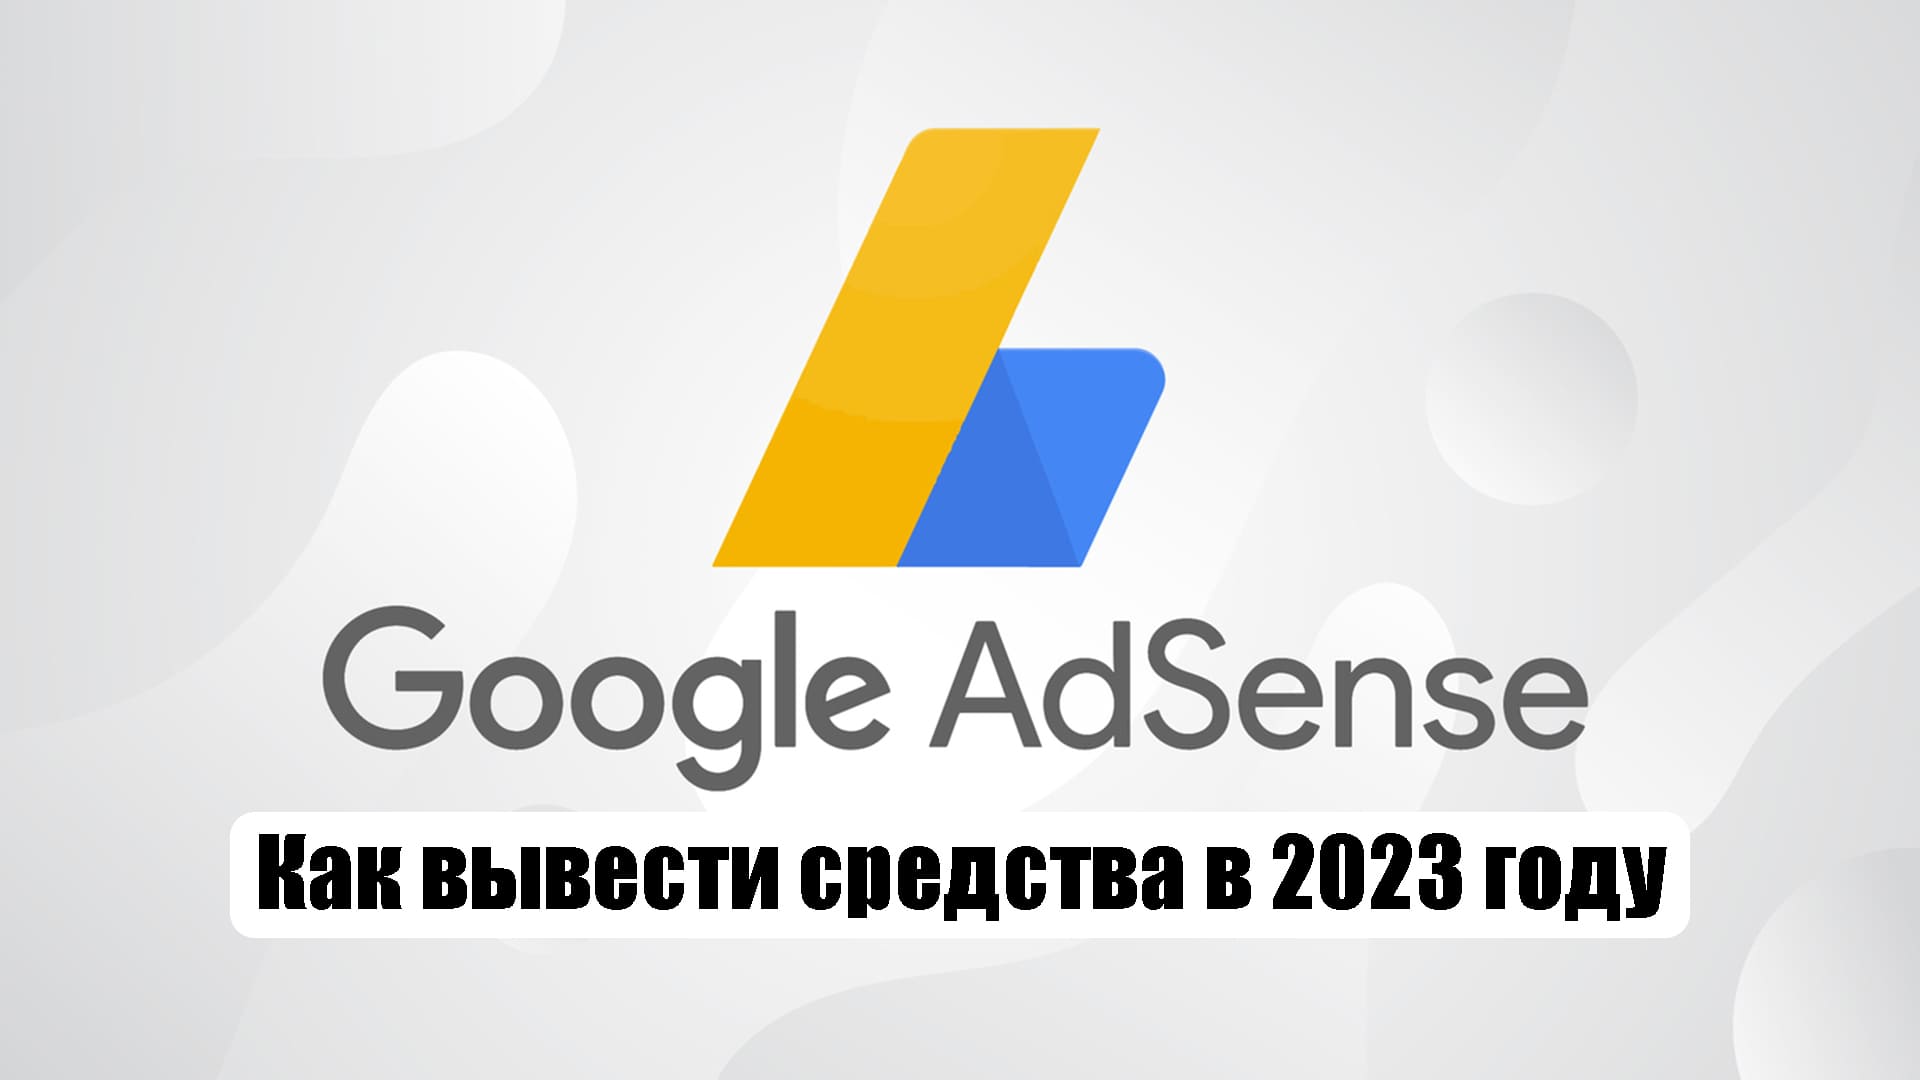 google adsense rак вывести средства в 2023 году в России